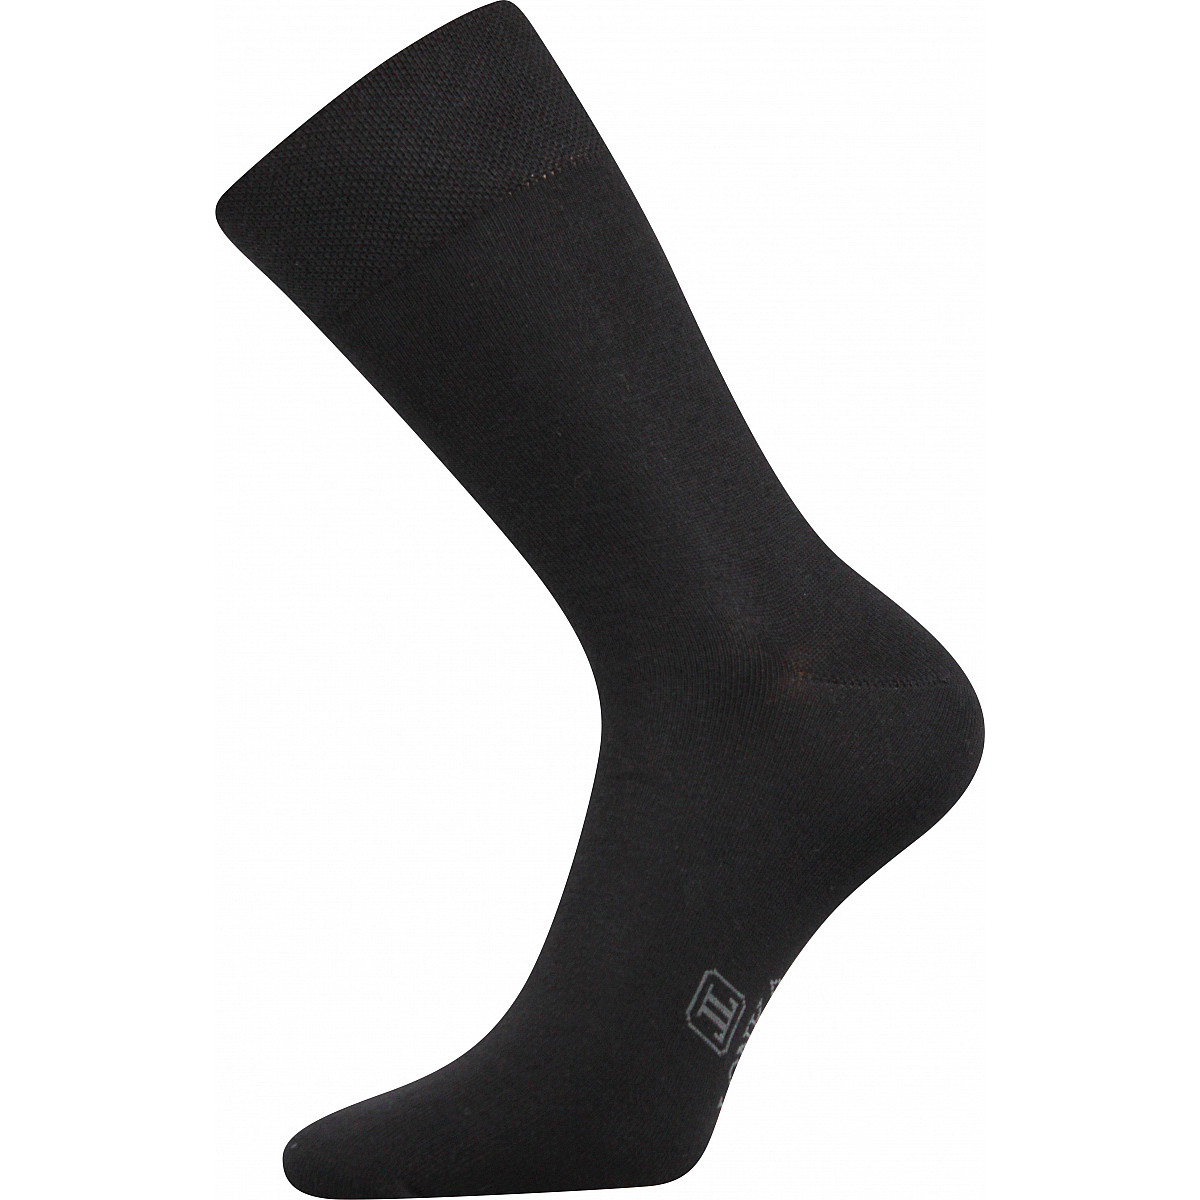 Ponožky pánské Lonka Decolor - černé, 39-42